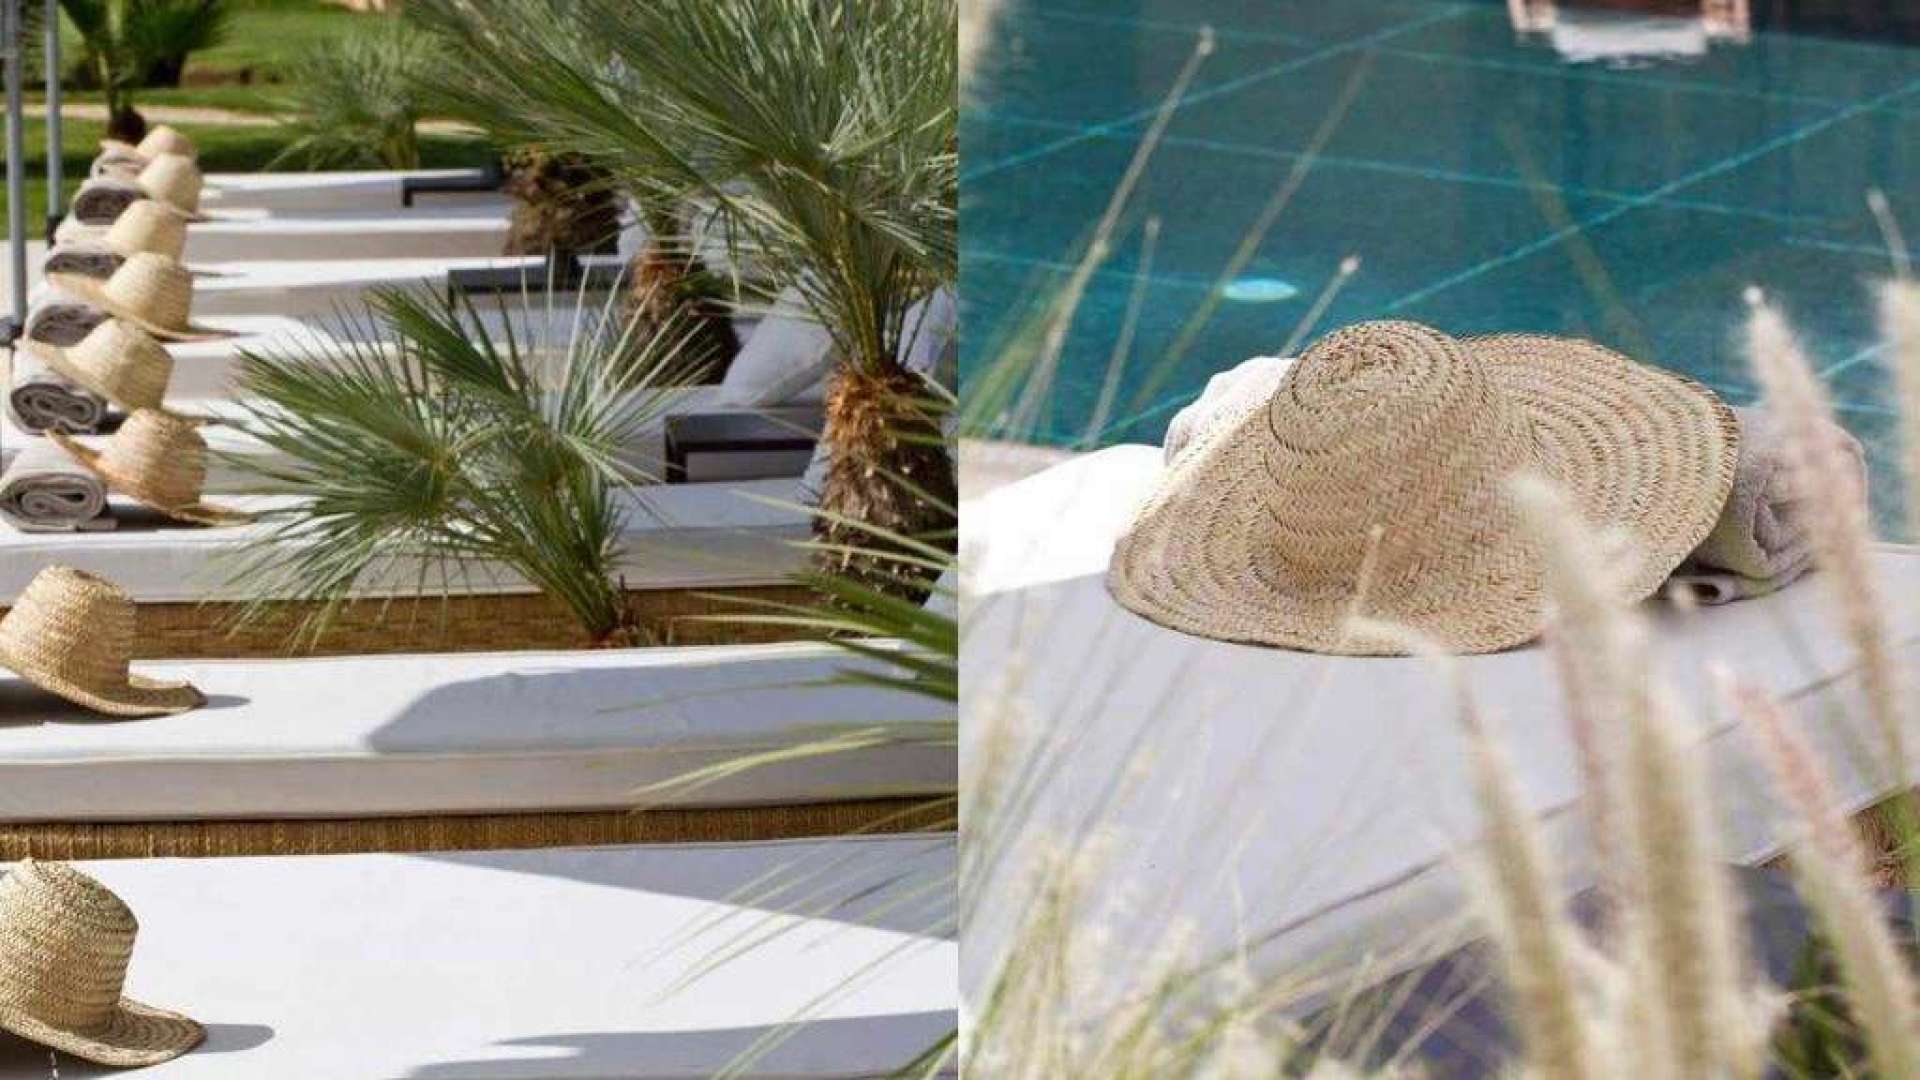 Location de vacances,Villa,Propriété de 10 suites d'exception - Services hôteliers - Piscine chauffée ,Marrakech,Bab Atlas